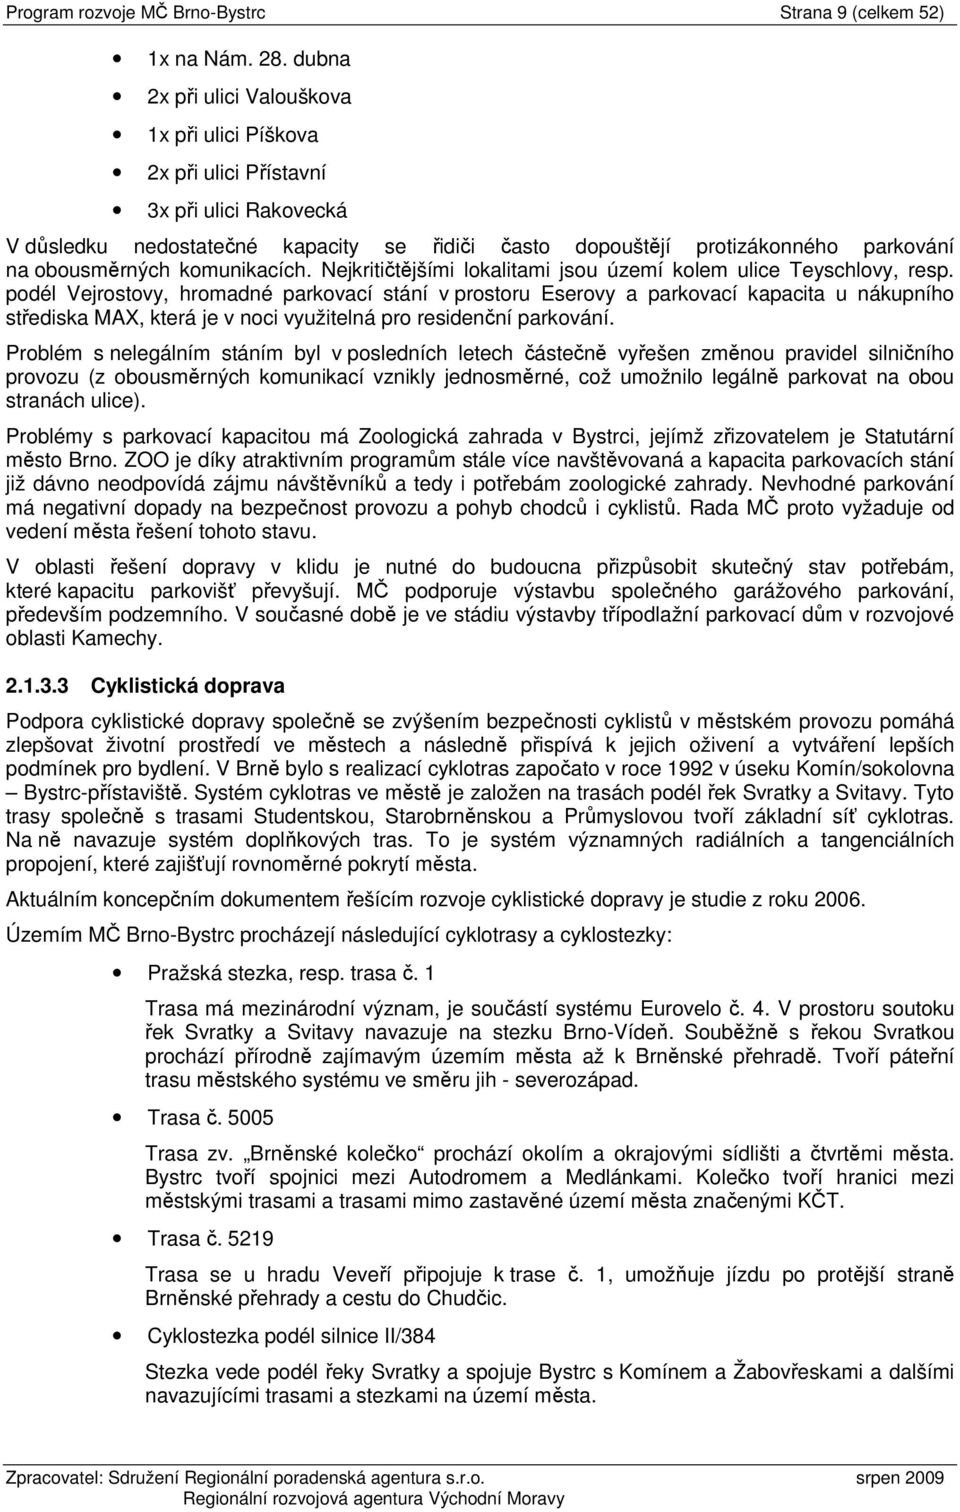 PROGRAM ROZVOJE MČ BRNO-BYSTRC KONCEPT - PDF Free Download